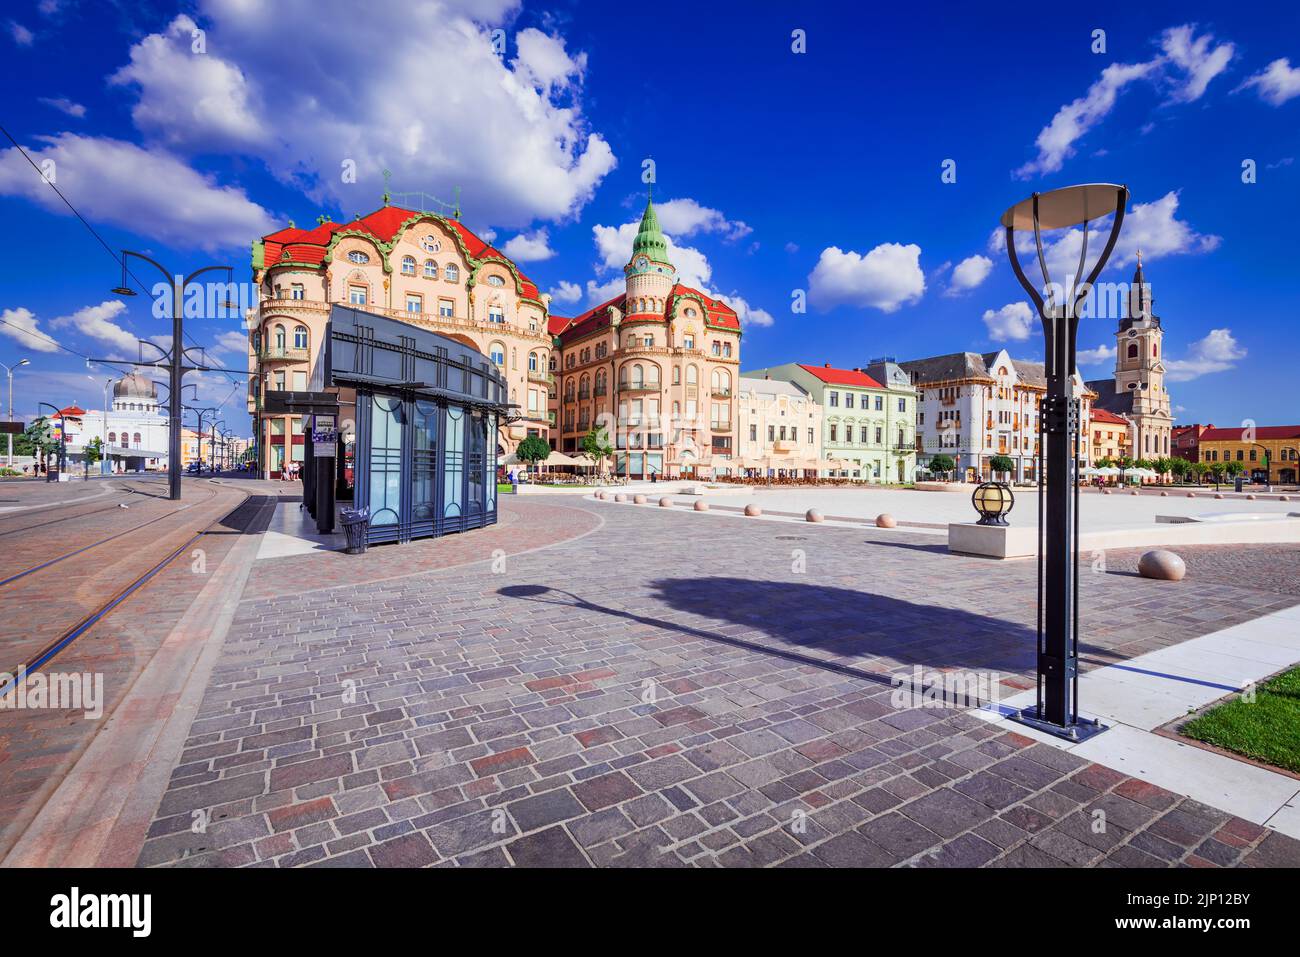 Oradea, Rumänien. Union Square in der schönen Stadt Crisana historischen Region. Man muss sich unbedingt den rumänischen Reiseort ansehen. Stockfoto